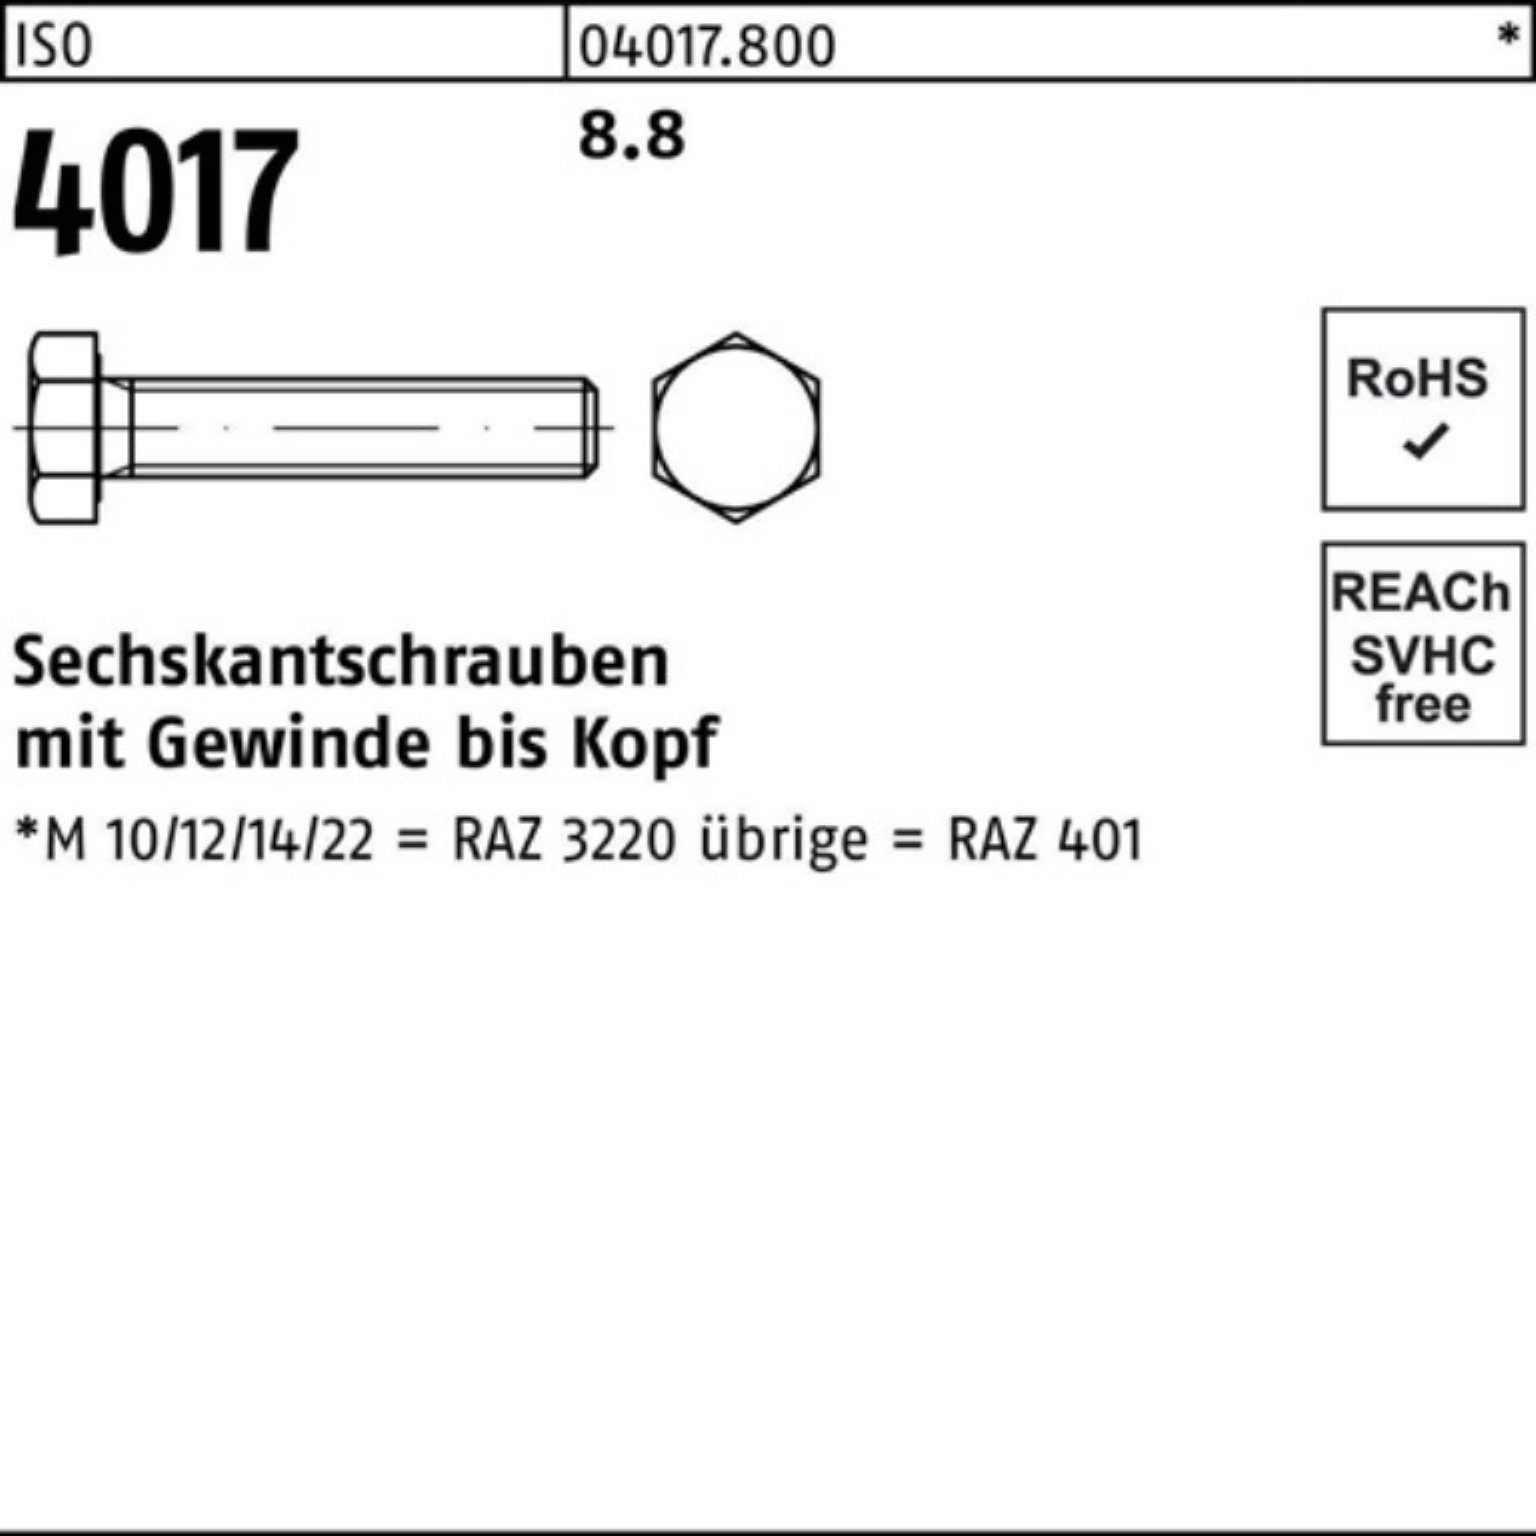 ISO Pack ISO 50 200er 200 Stück Bufab Sechskantschraube VG M8x 8.8 401 Sechskantschraube 4017